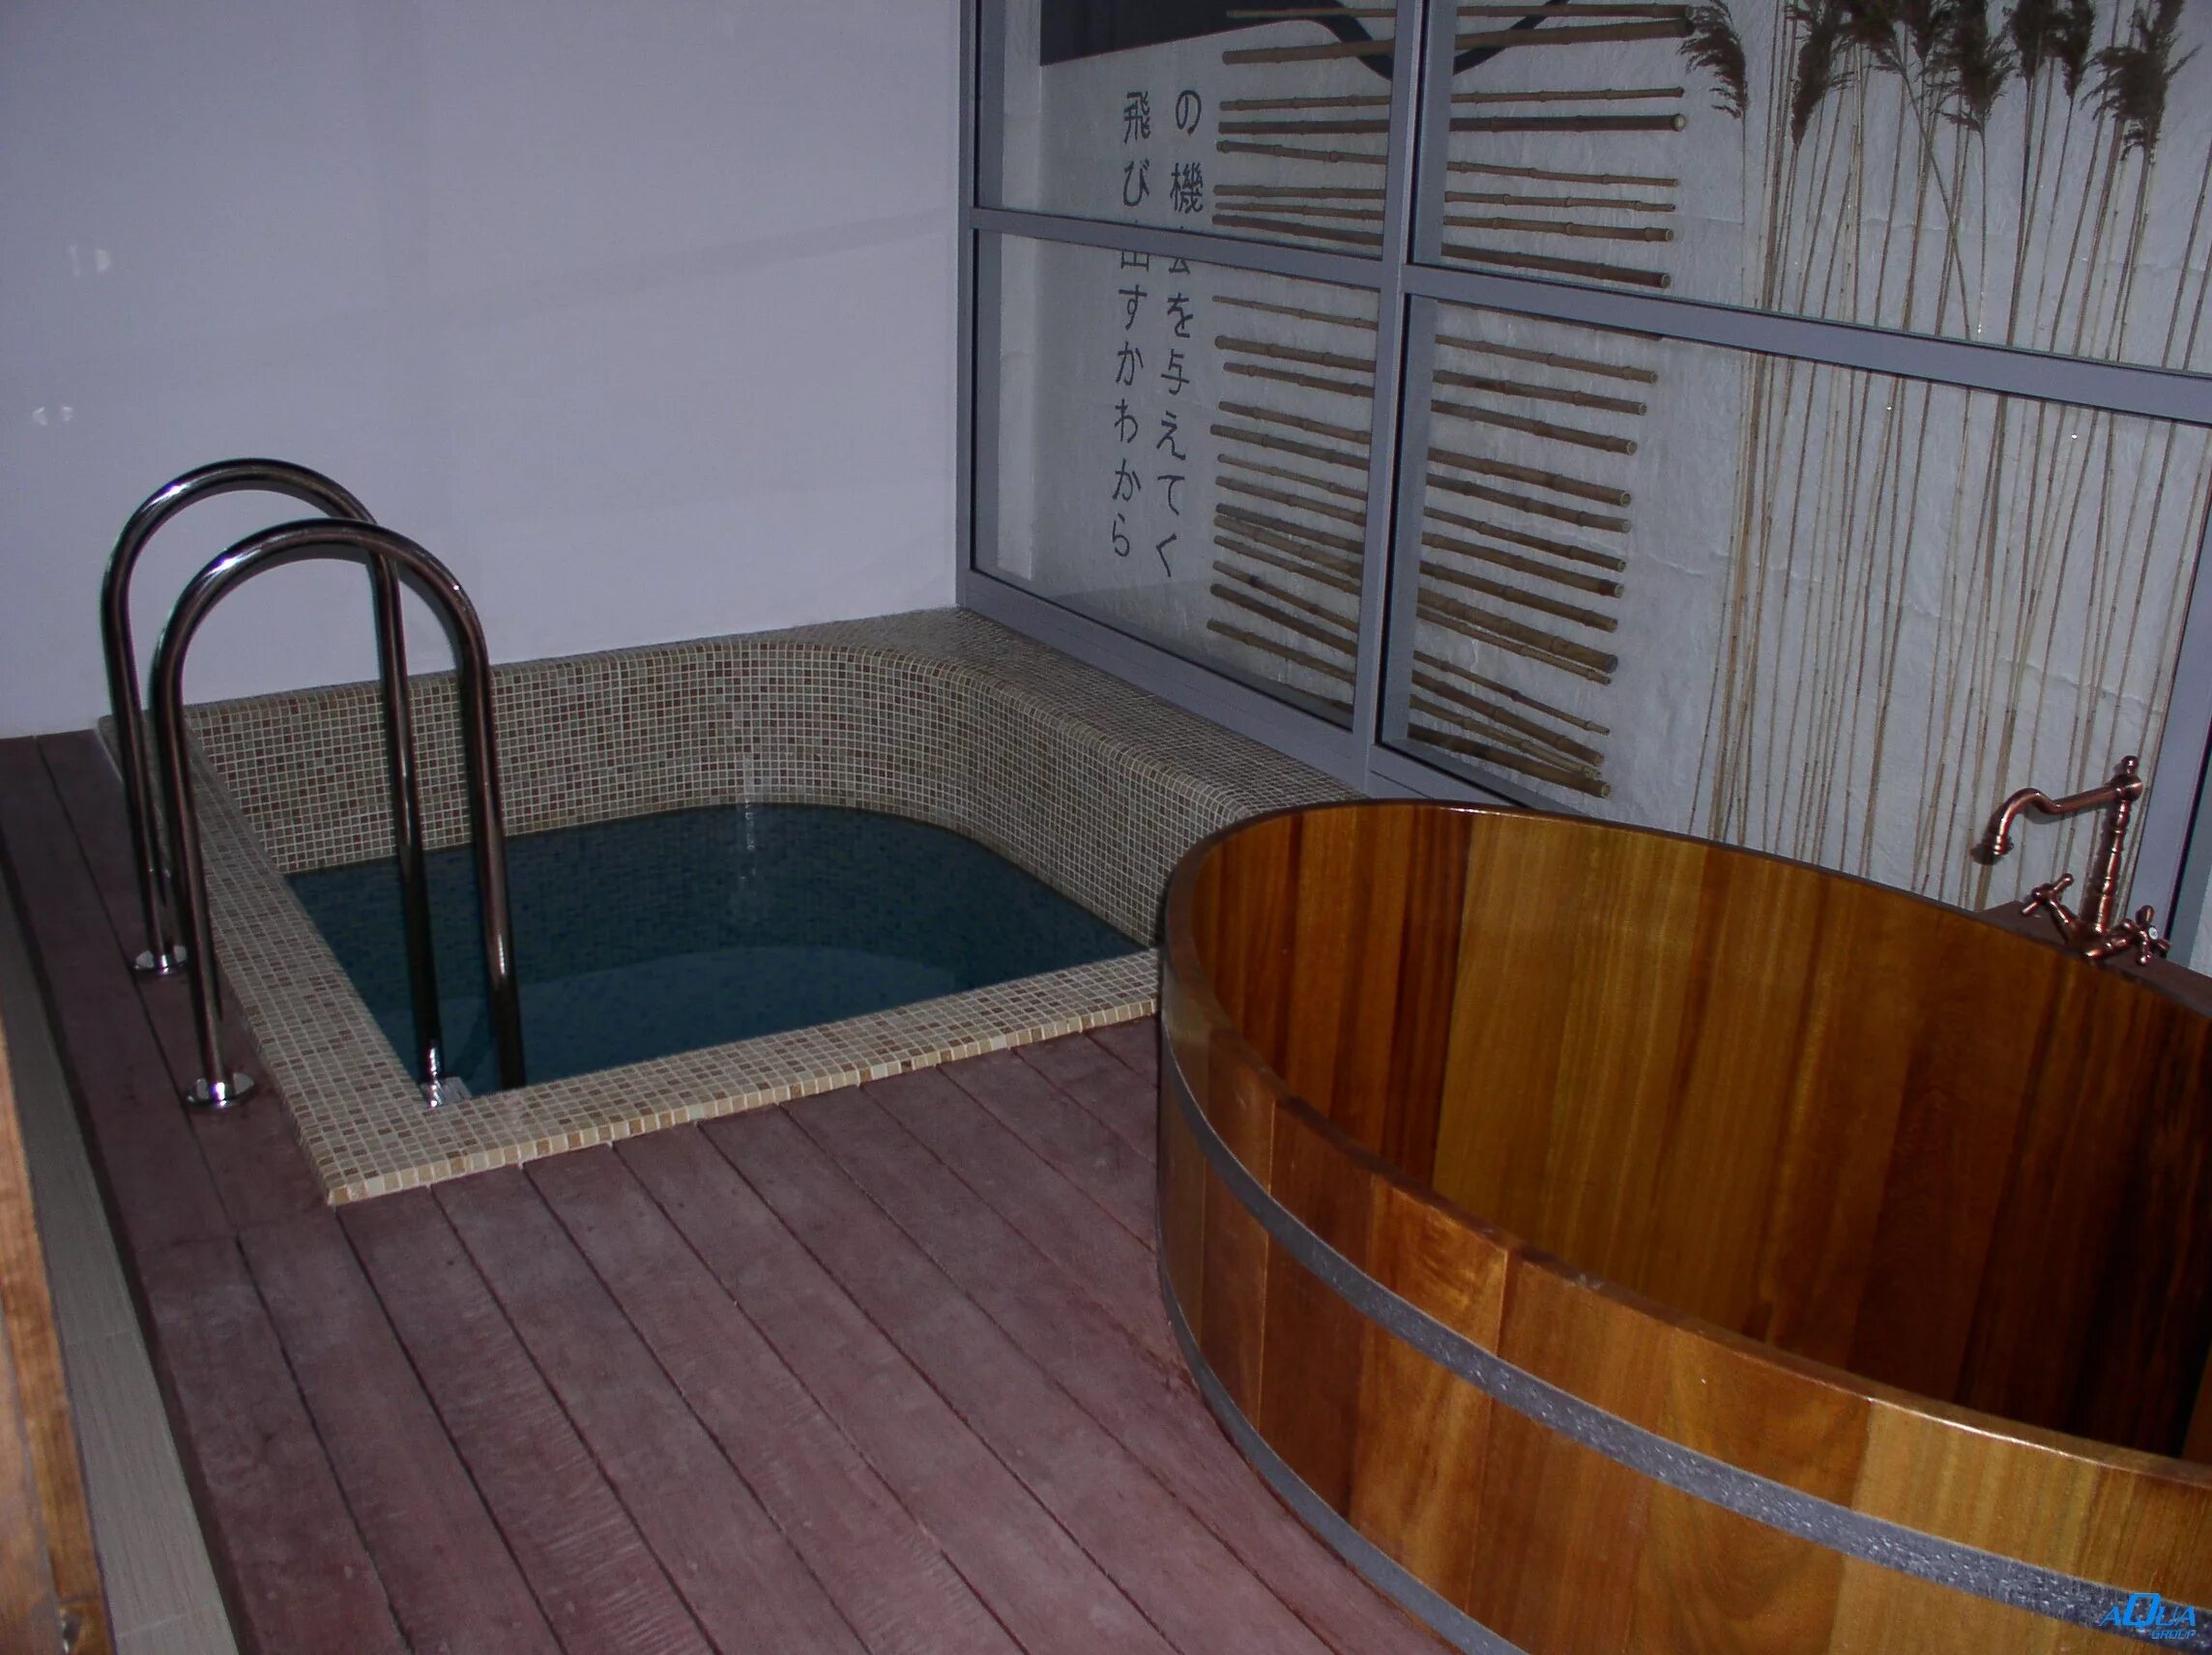 Купель для бани. Небольшой бассейн в бане. Мини бассейн в бане. Баня с купелью внутри.